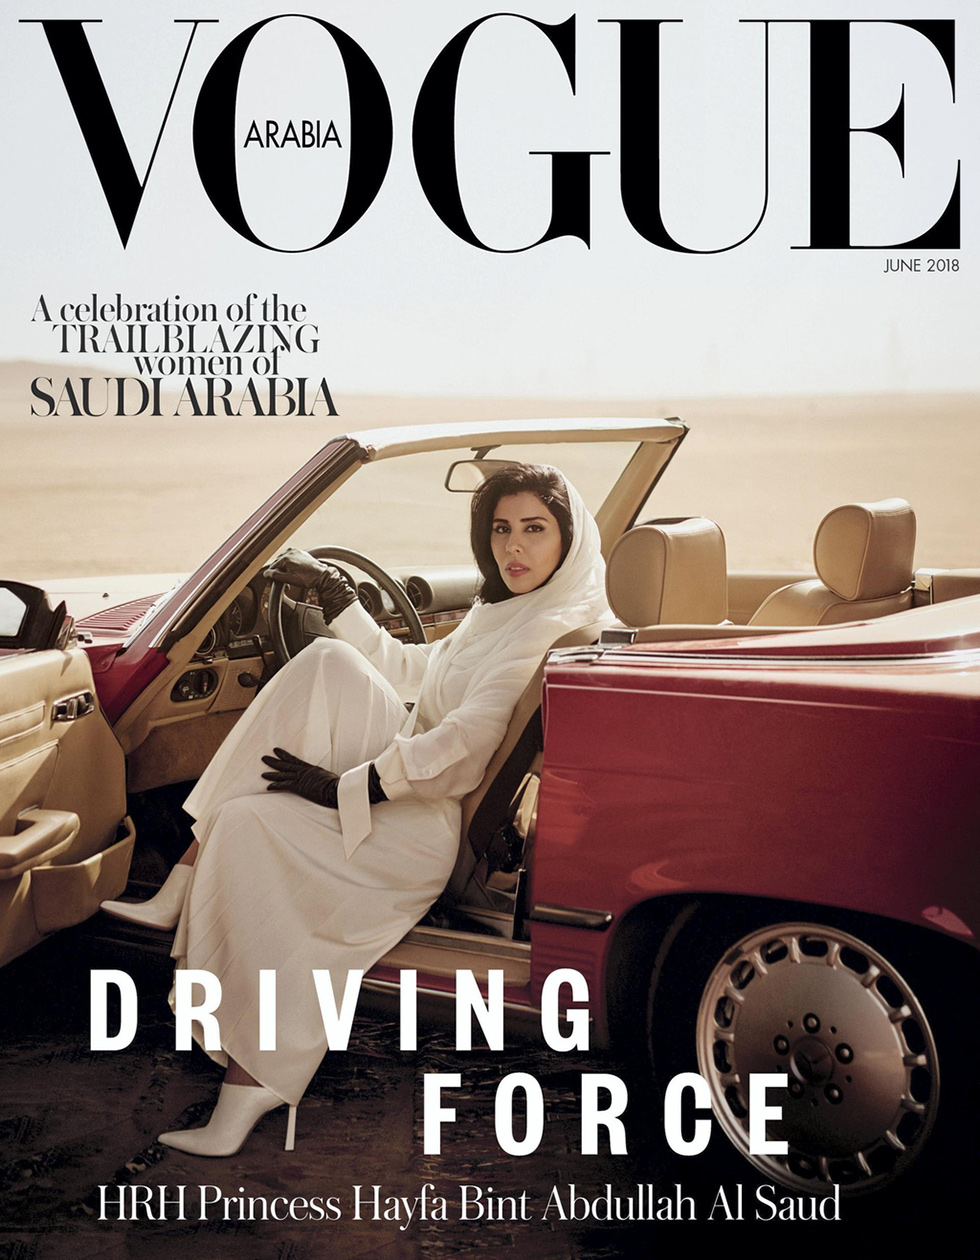 נסיכה סעודית בתו של המלך המנוח עבדאללה על שער מגזין ווג ערביה (צילום: vogue)